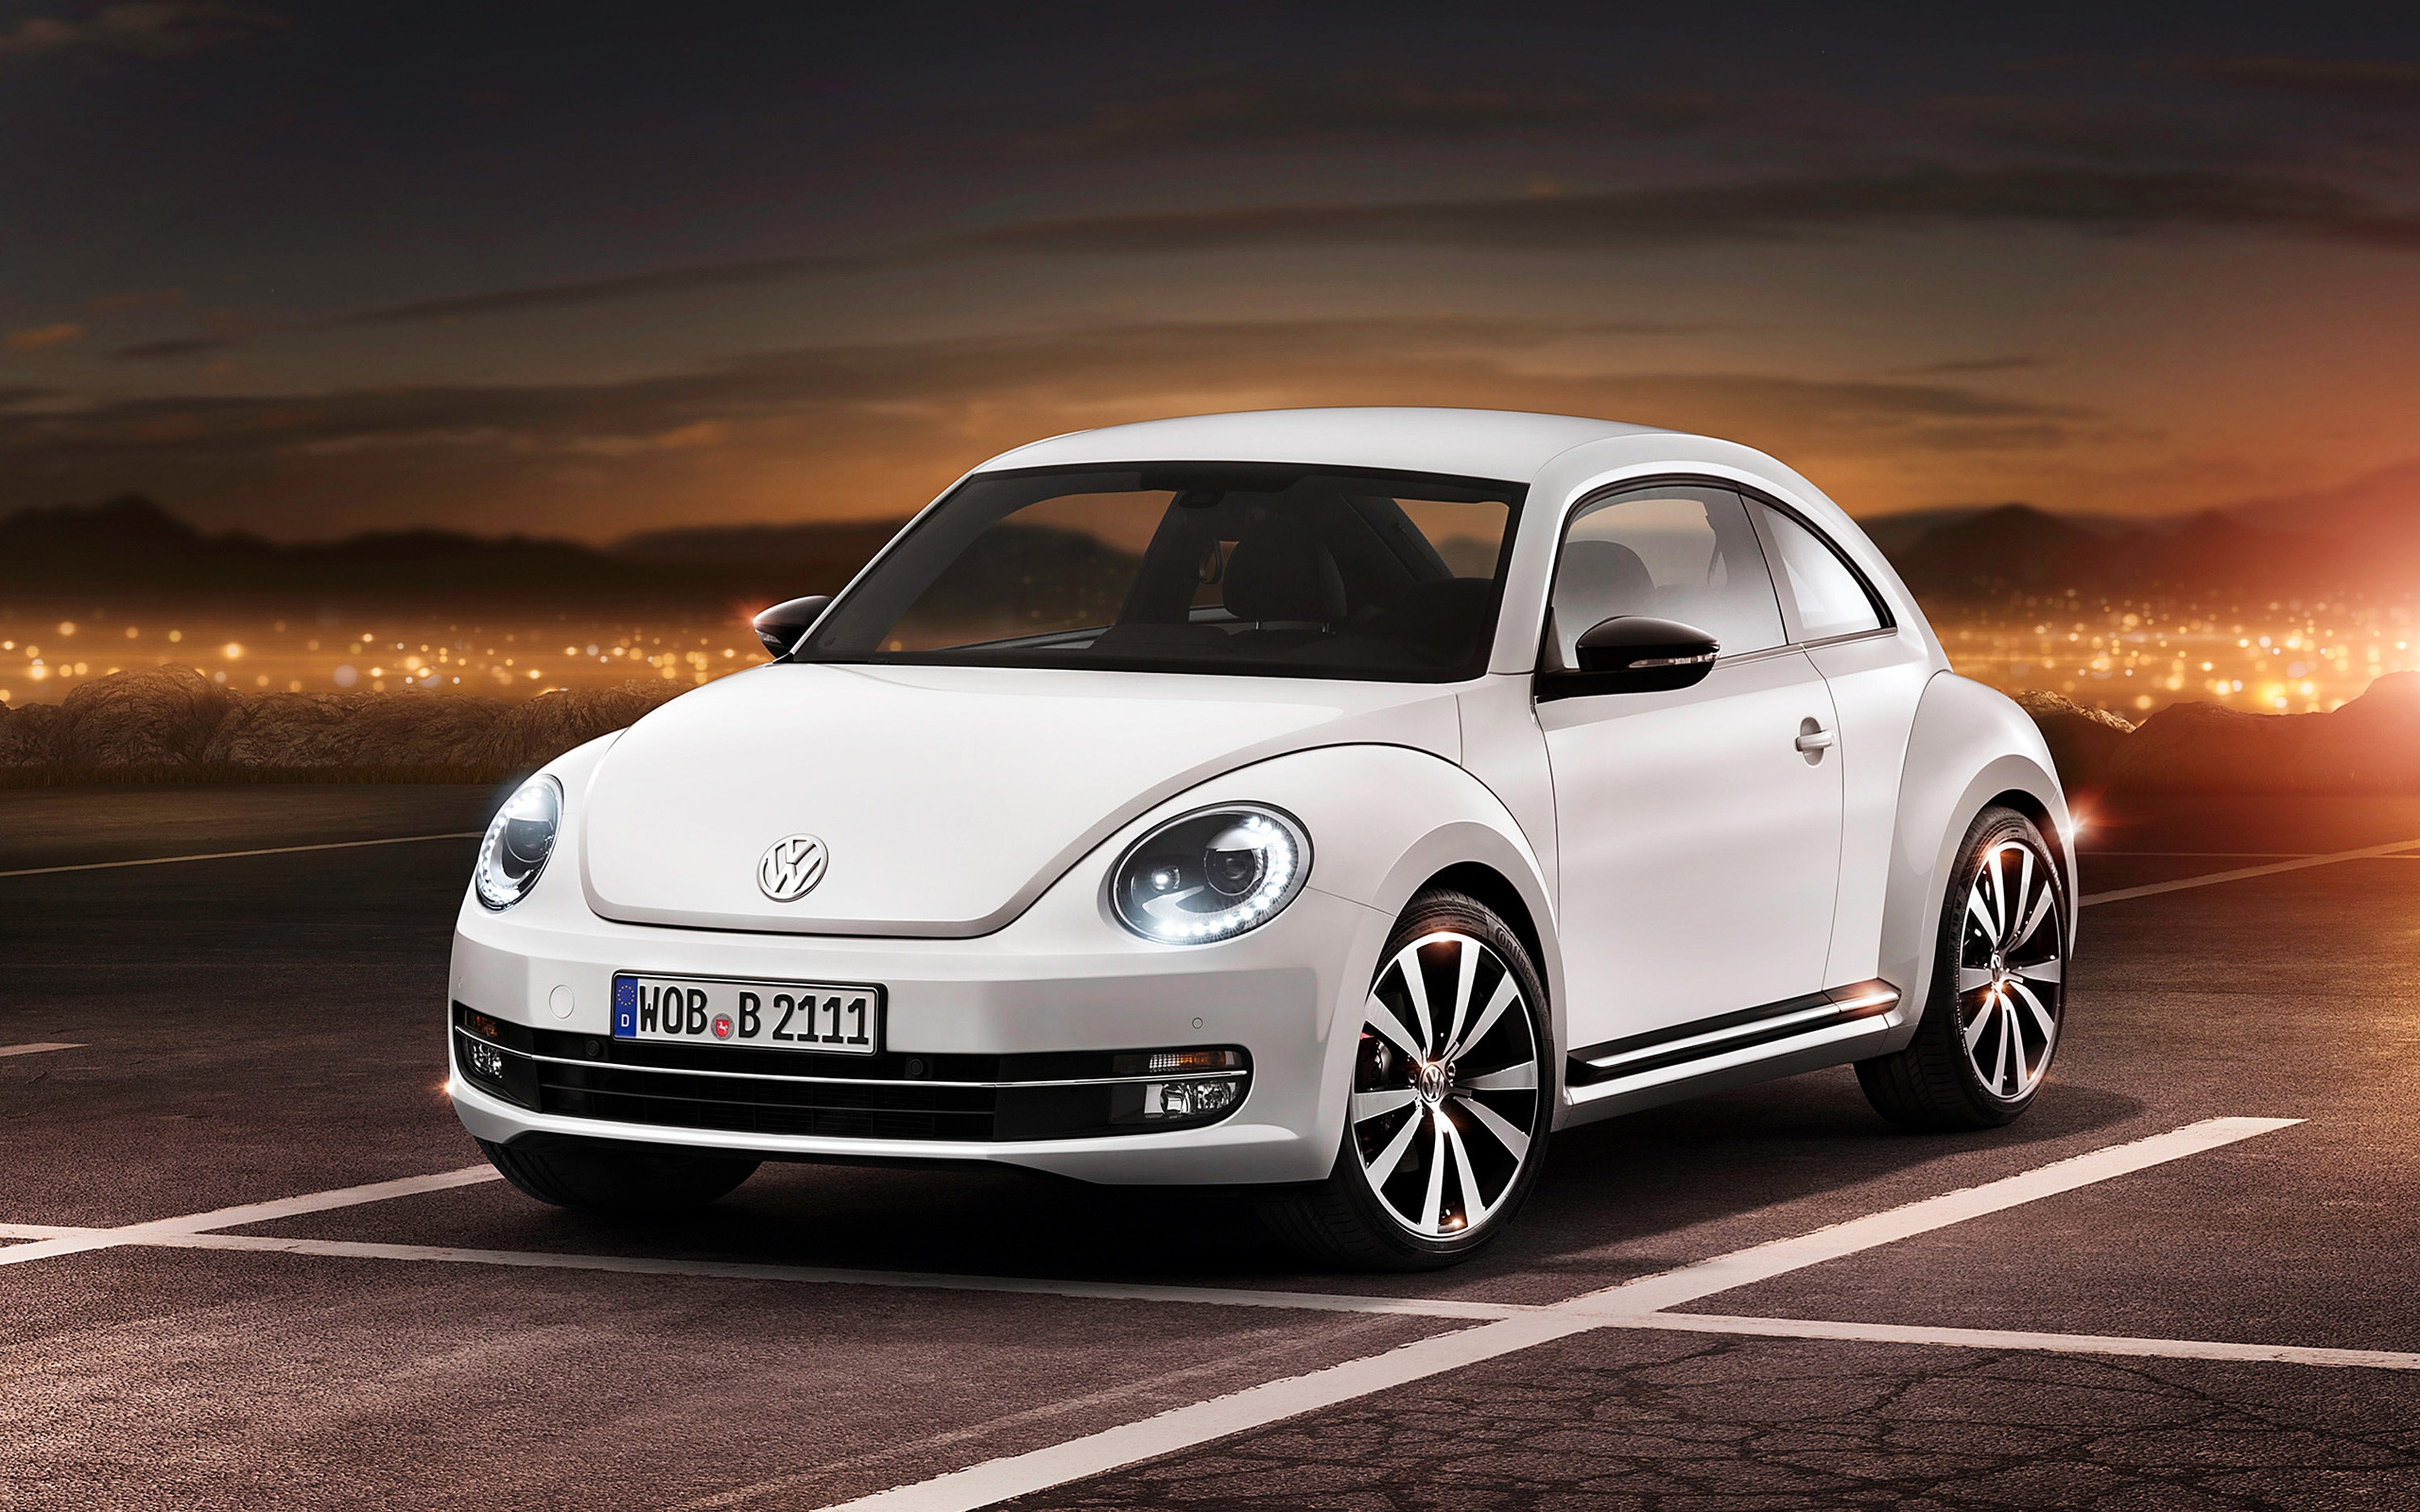 2012 Volkswagen Beetle for 2560 x 1600 widescreen resolution